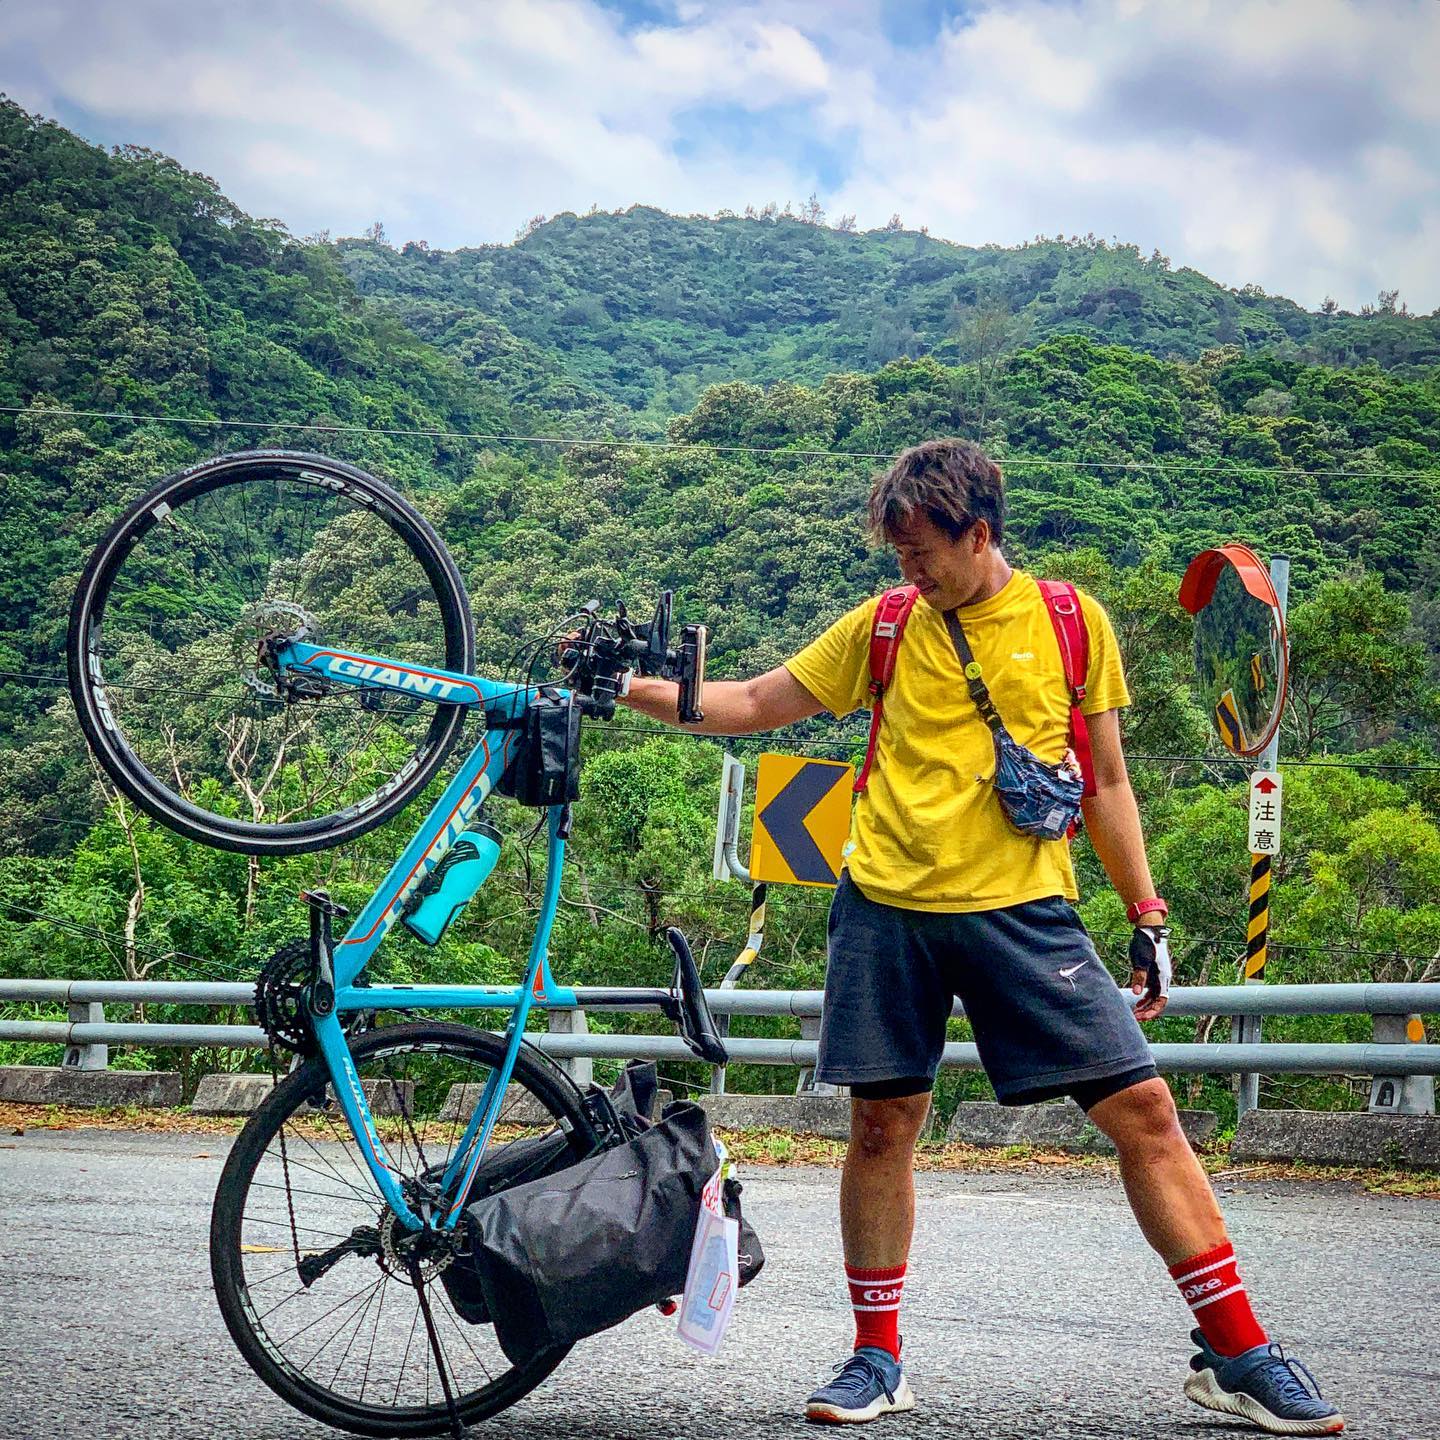 Youtuber Ccwhy Yao thực hiện chuyến du lịch vòng quanh Đài Loan bằng xe đạp. (Nguồn ảnh: kênh YouTube “西西歪 Ccwhyao”) 